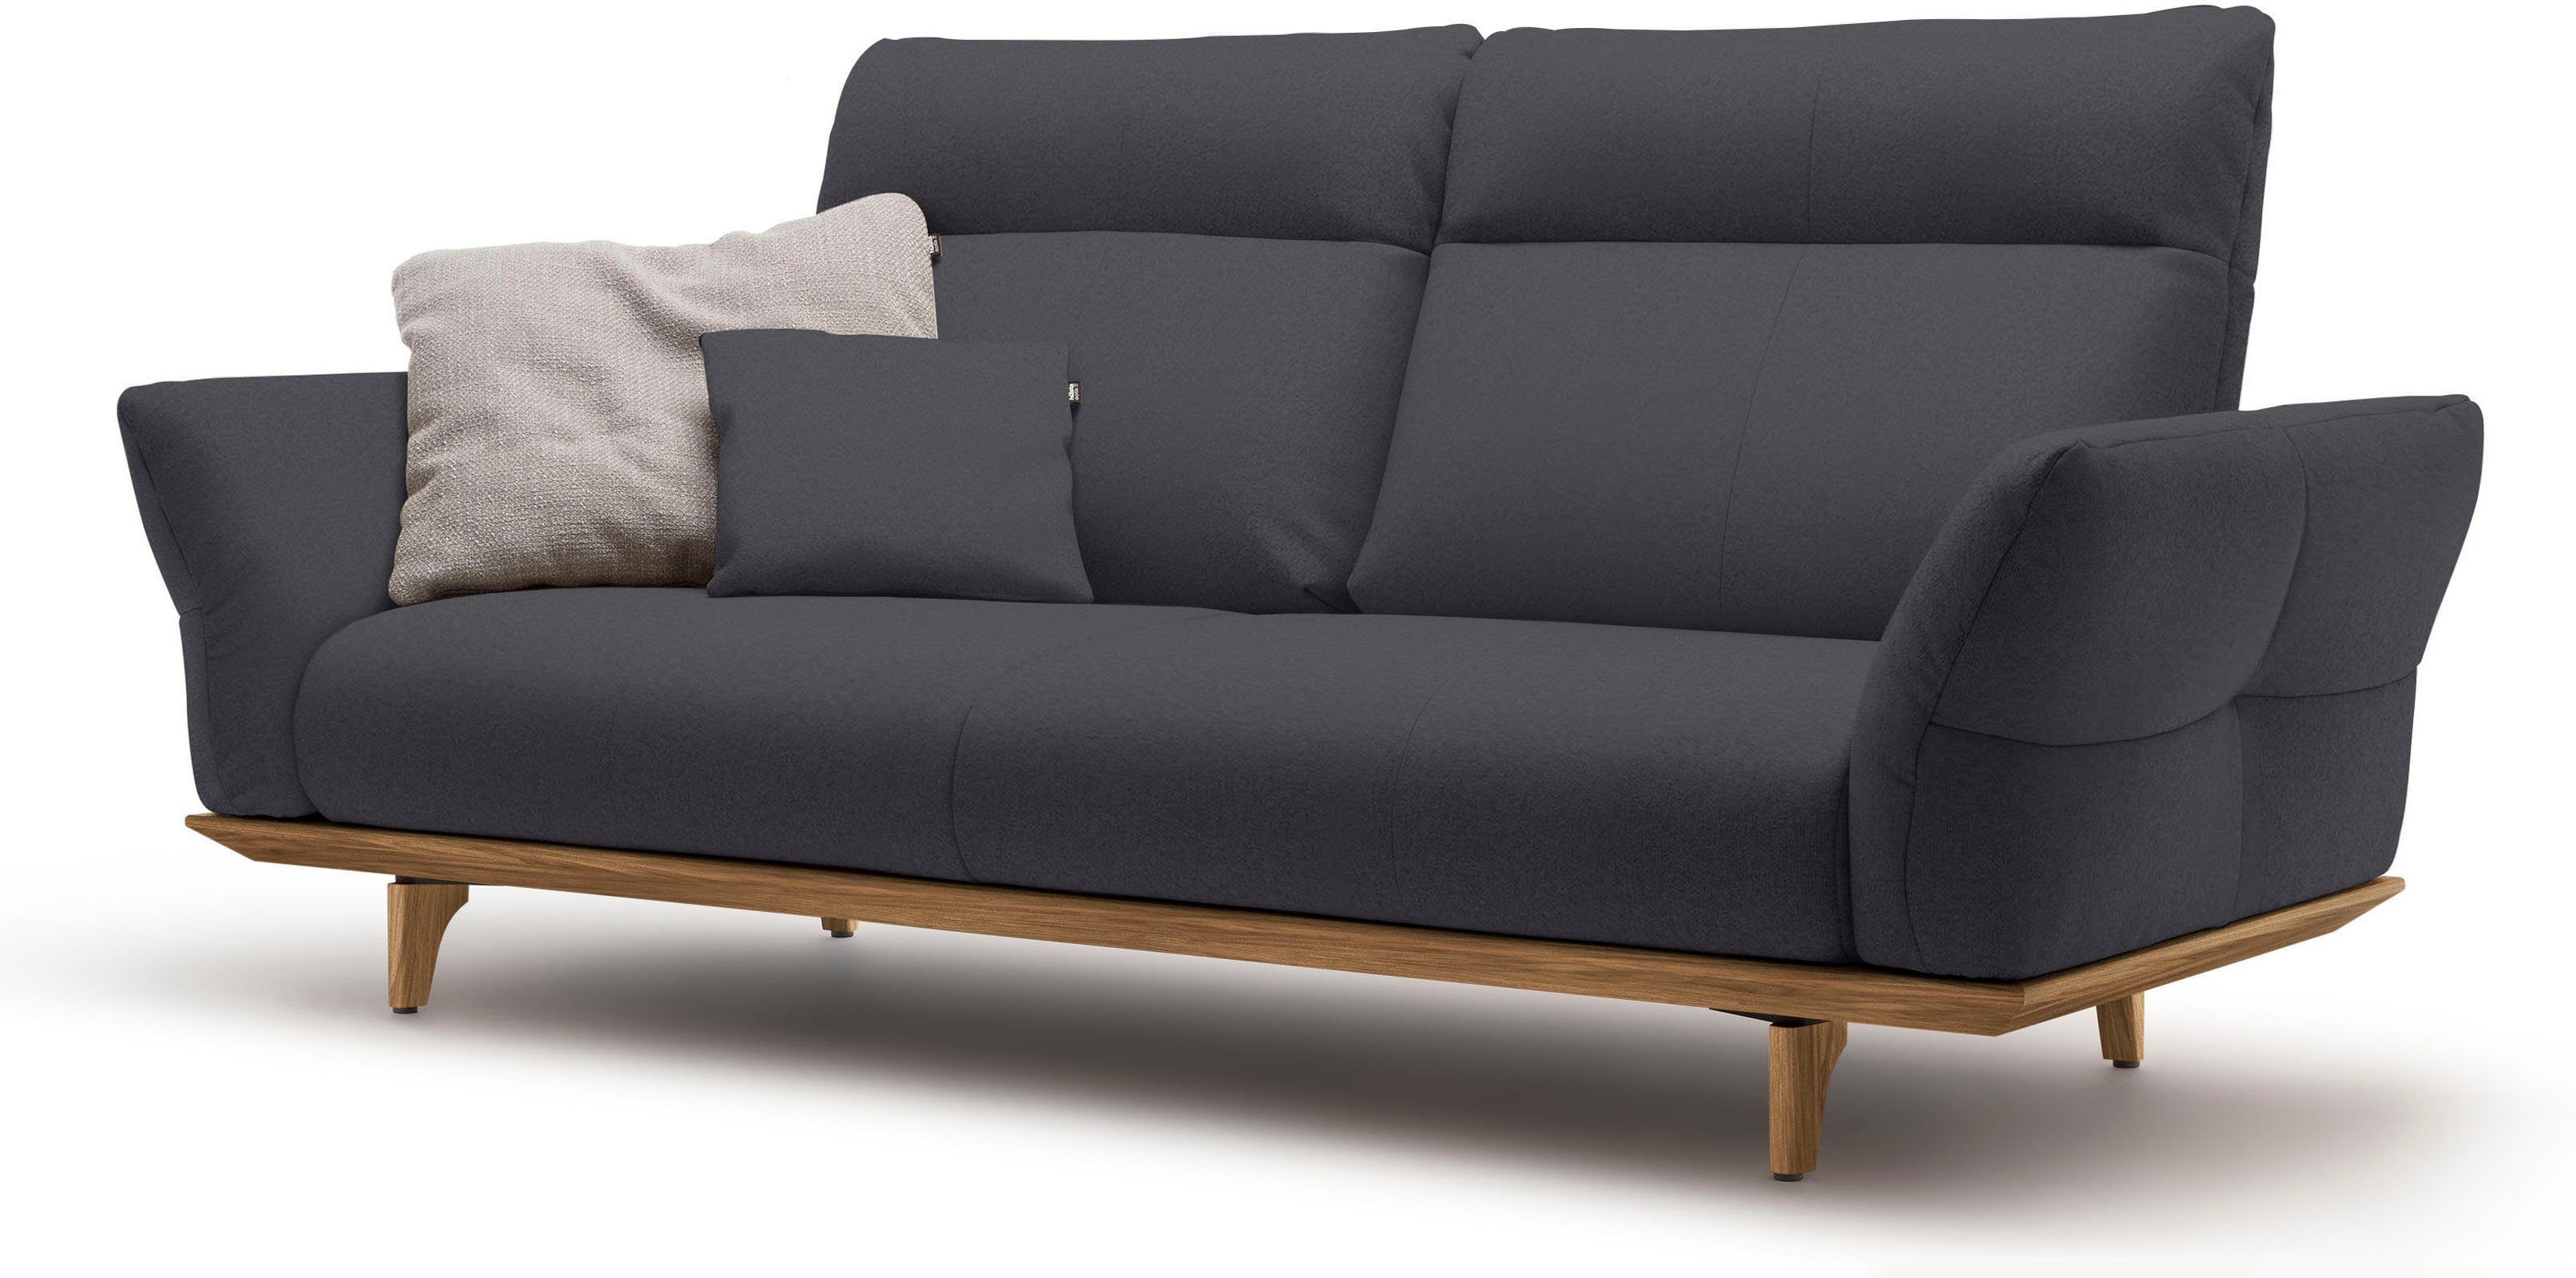 3-Sitzer sofa cm 208 Sockel Nussbaum, in hs.460, hülsta Füße Nussbaum, Breite